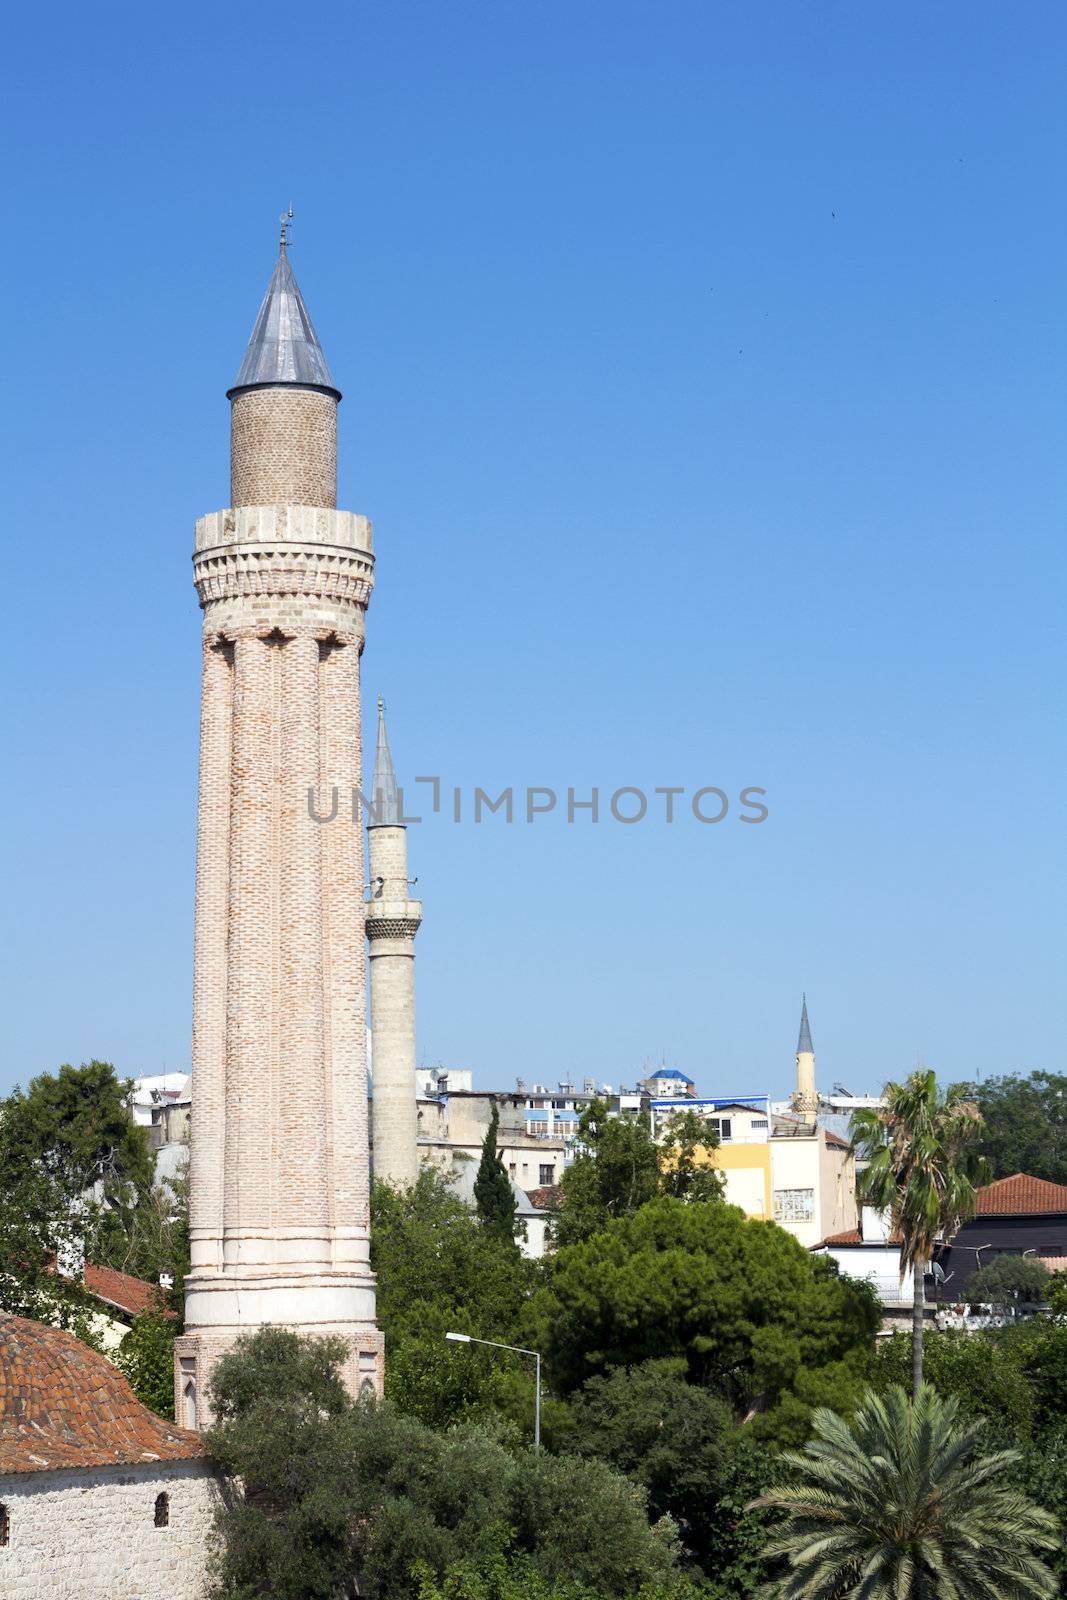 Famous Yivli minaret in Antalya, Turkey